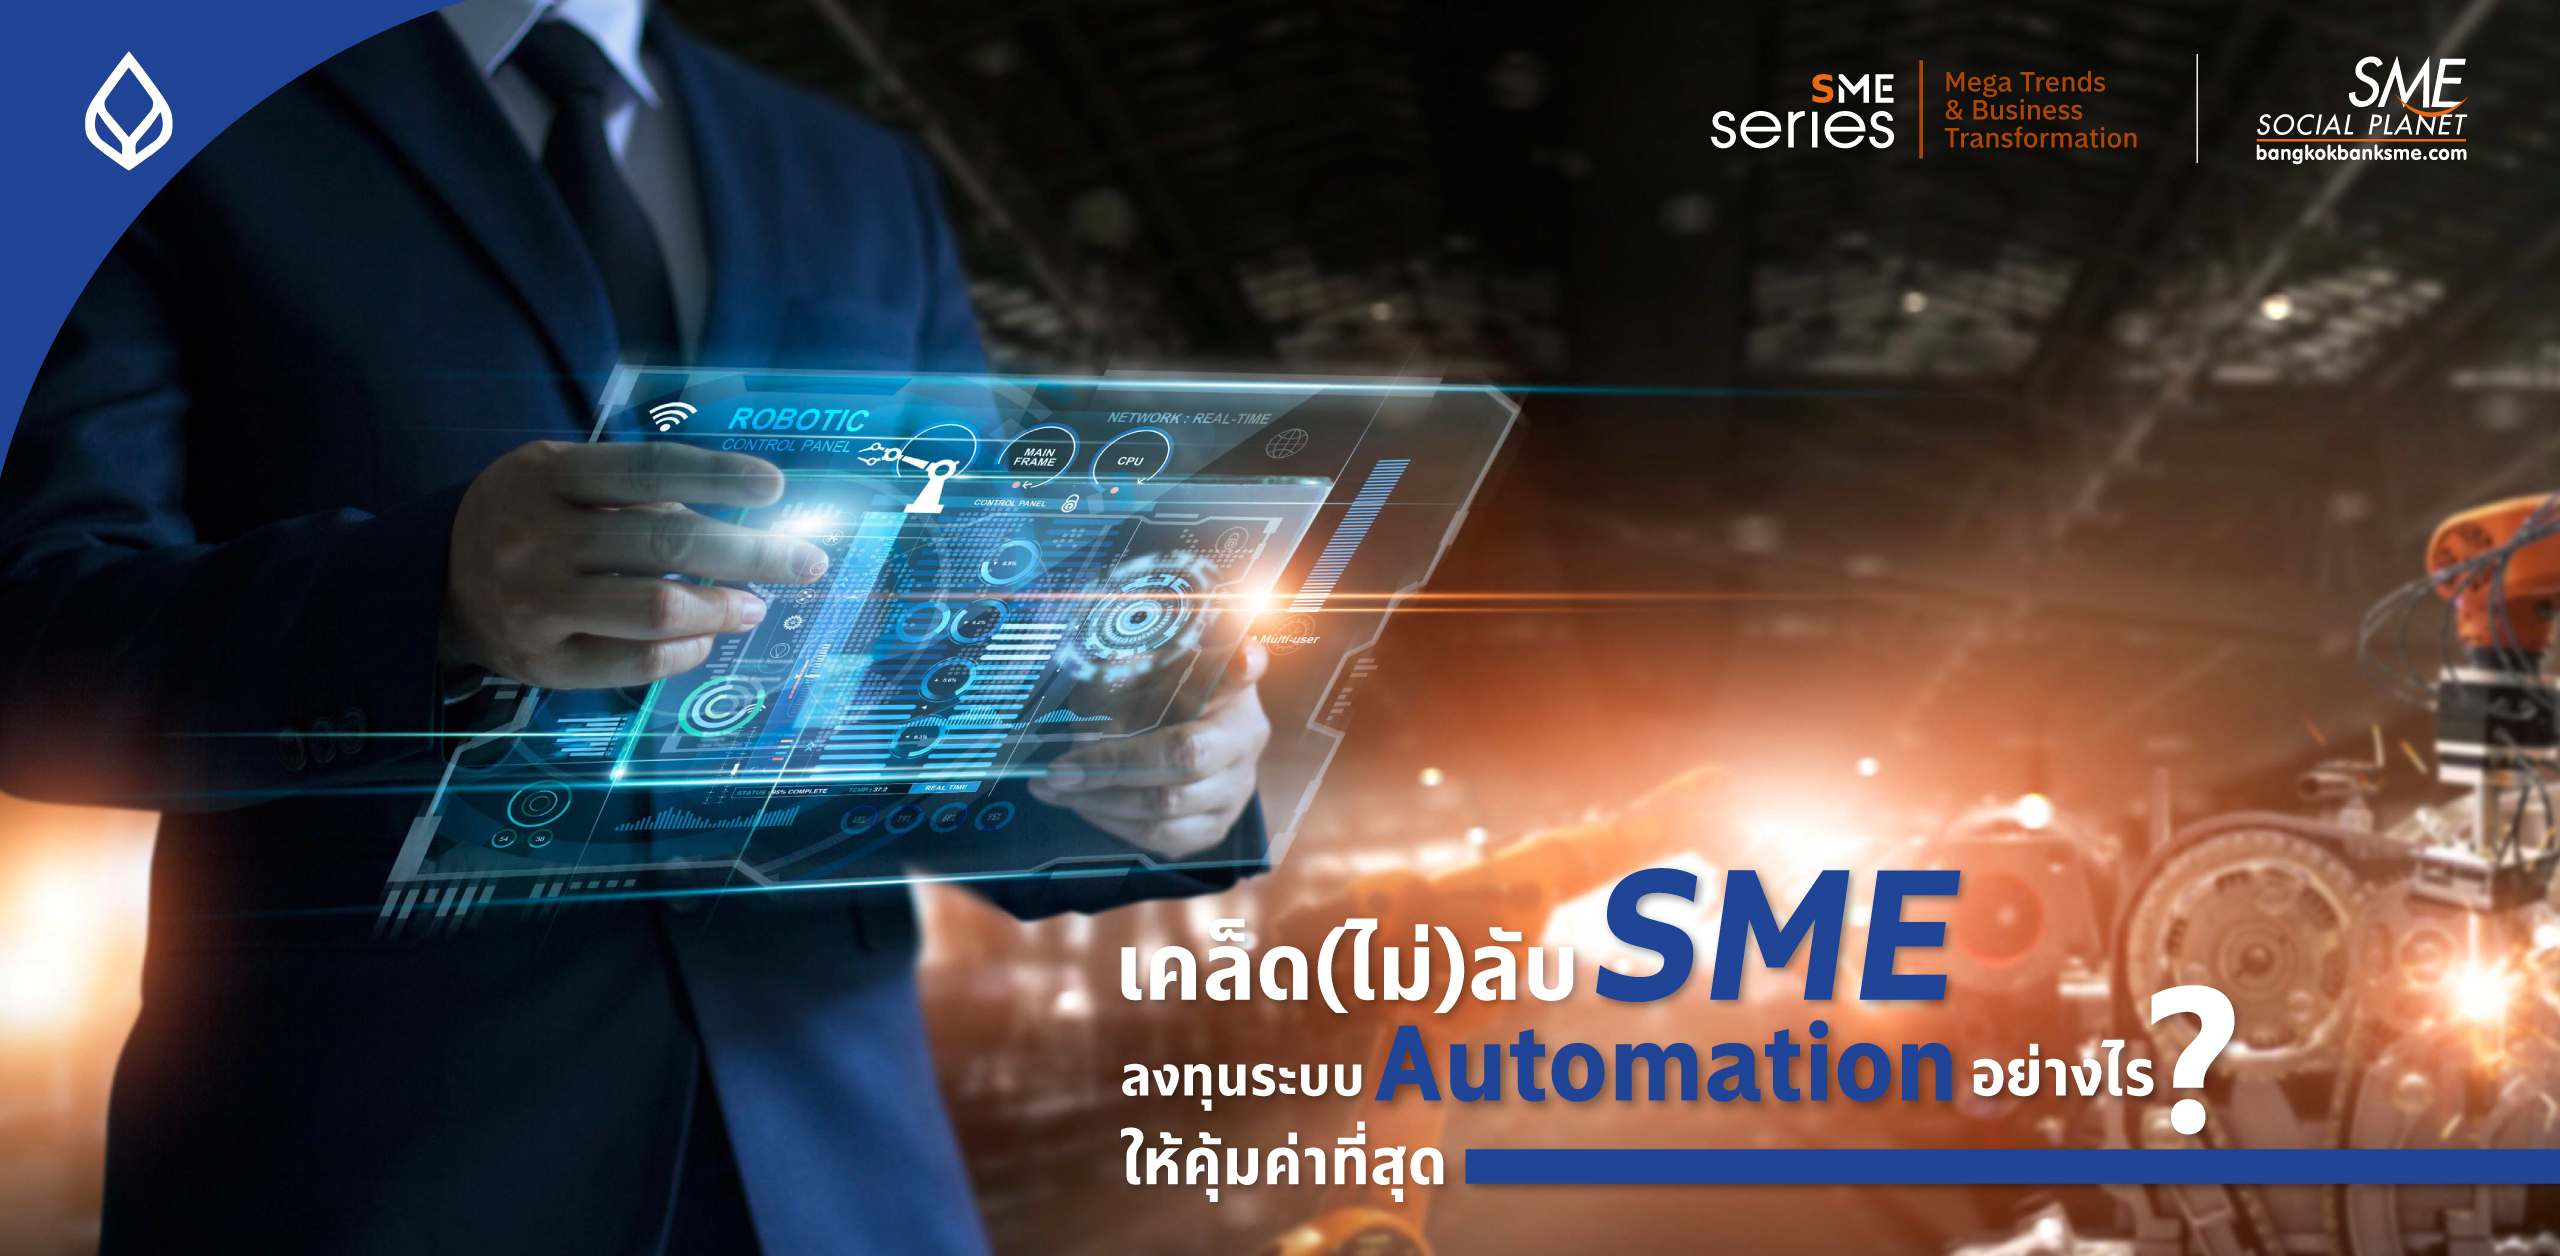 สิ่งที่ผู้ประกอบการ SME ต้องรู้ ก่อน Business Transformation องค์กรเข้าสู่ระบบ ‘Automation’